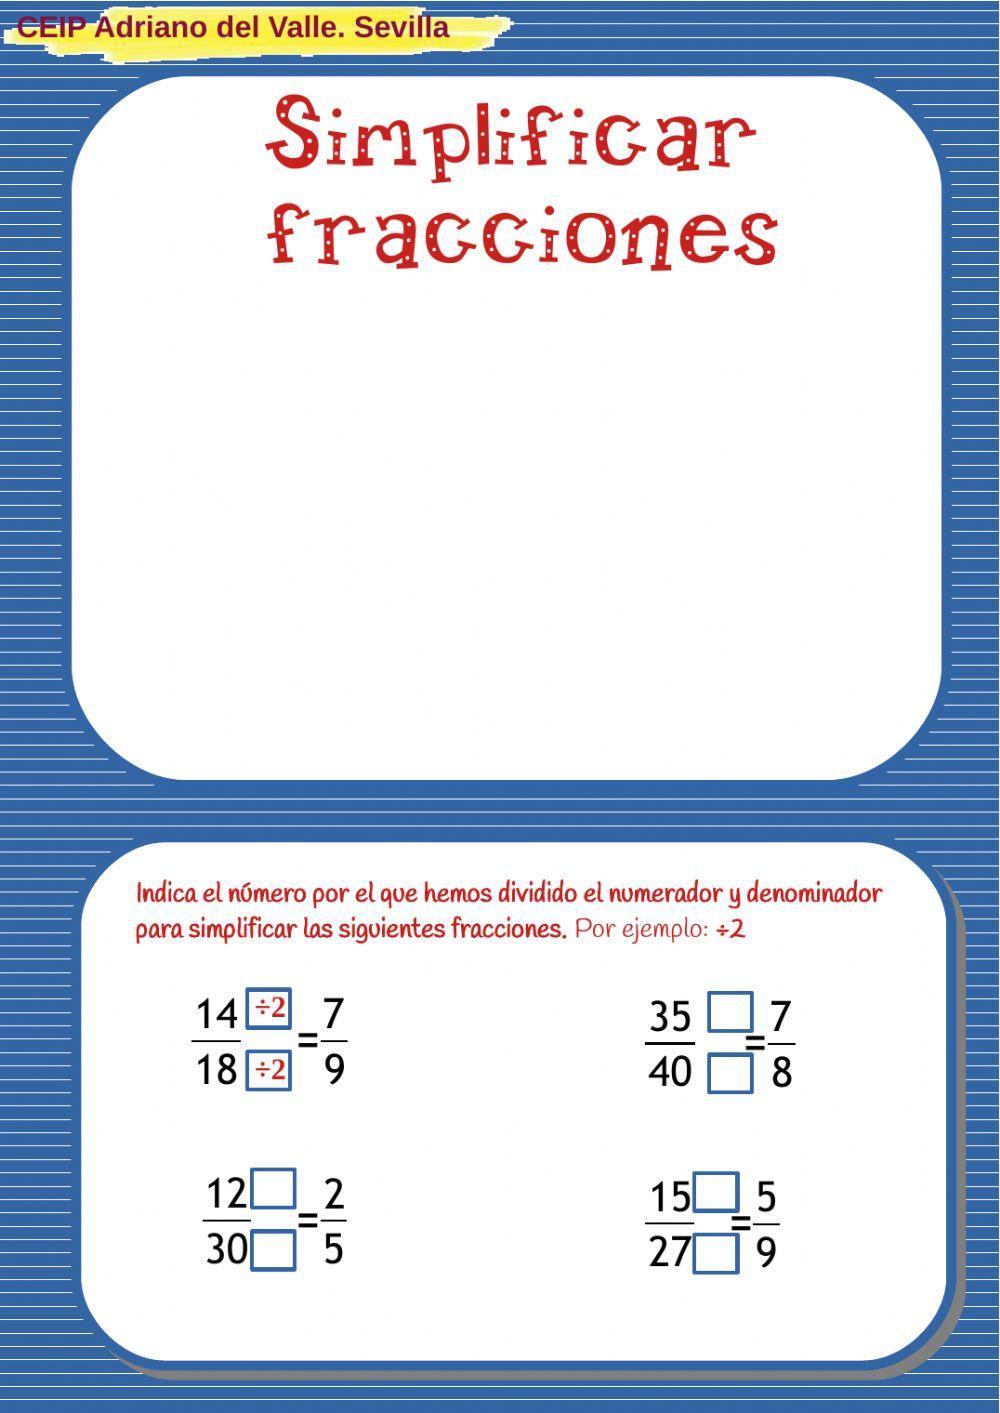 Simplificación de fracciones